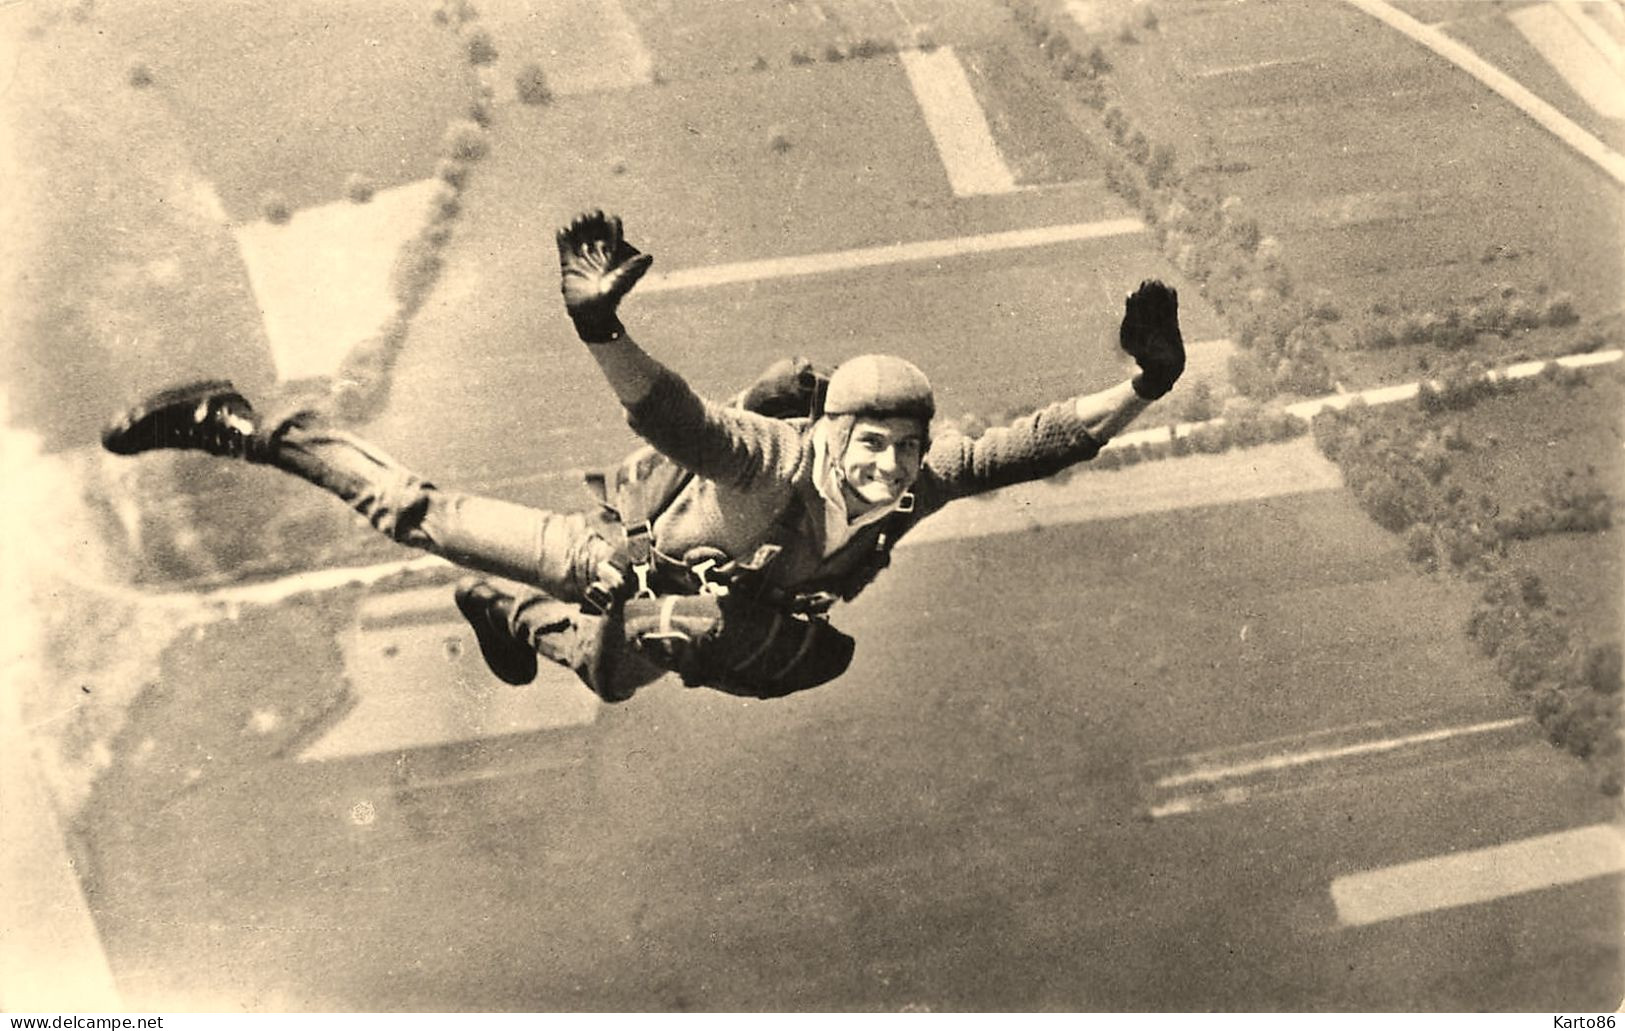 Parachutisme * Le Parachustiste Gérard TREVES Champion Du Monde De Précision D'atterrissage * Aviation - Parachutespringen